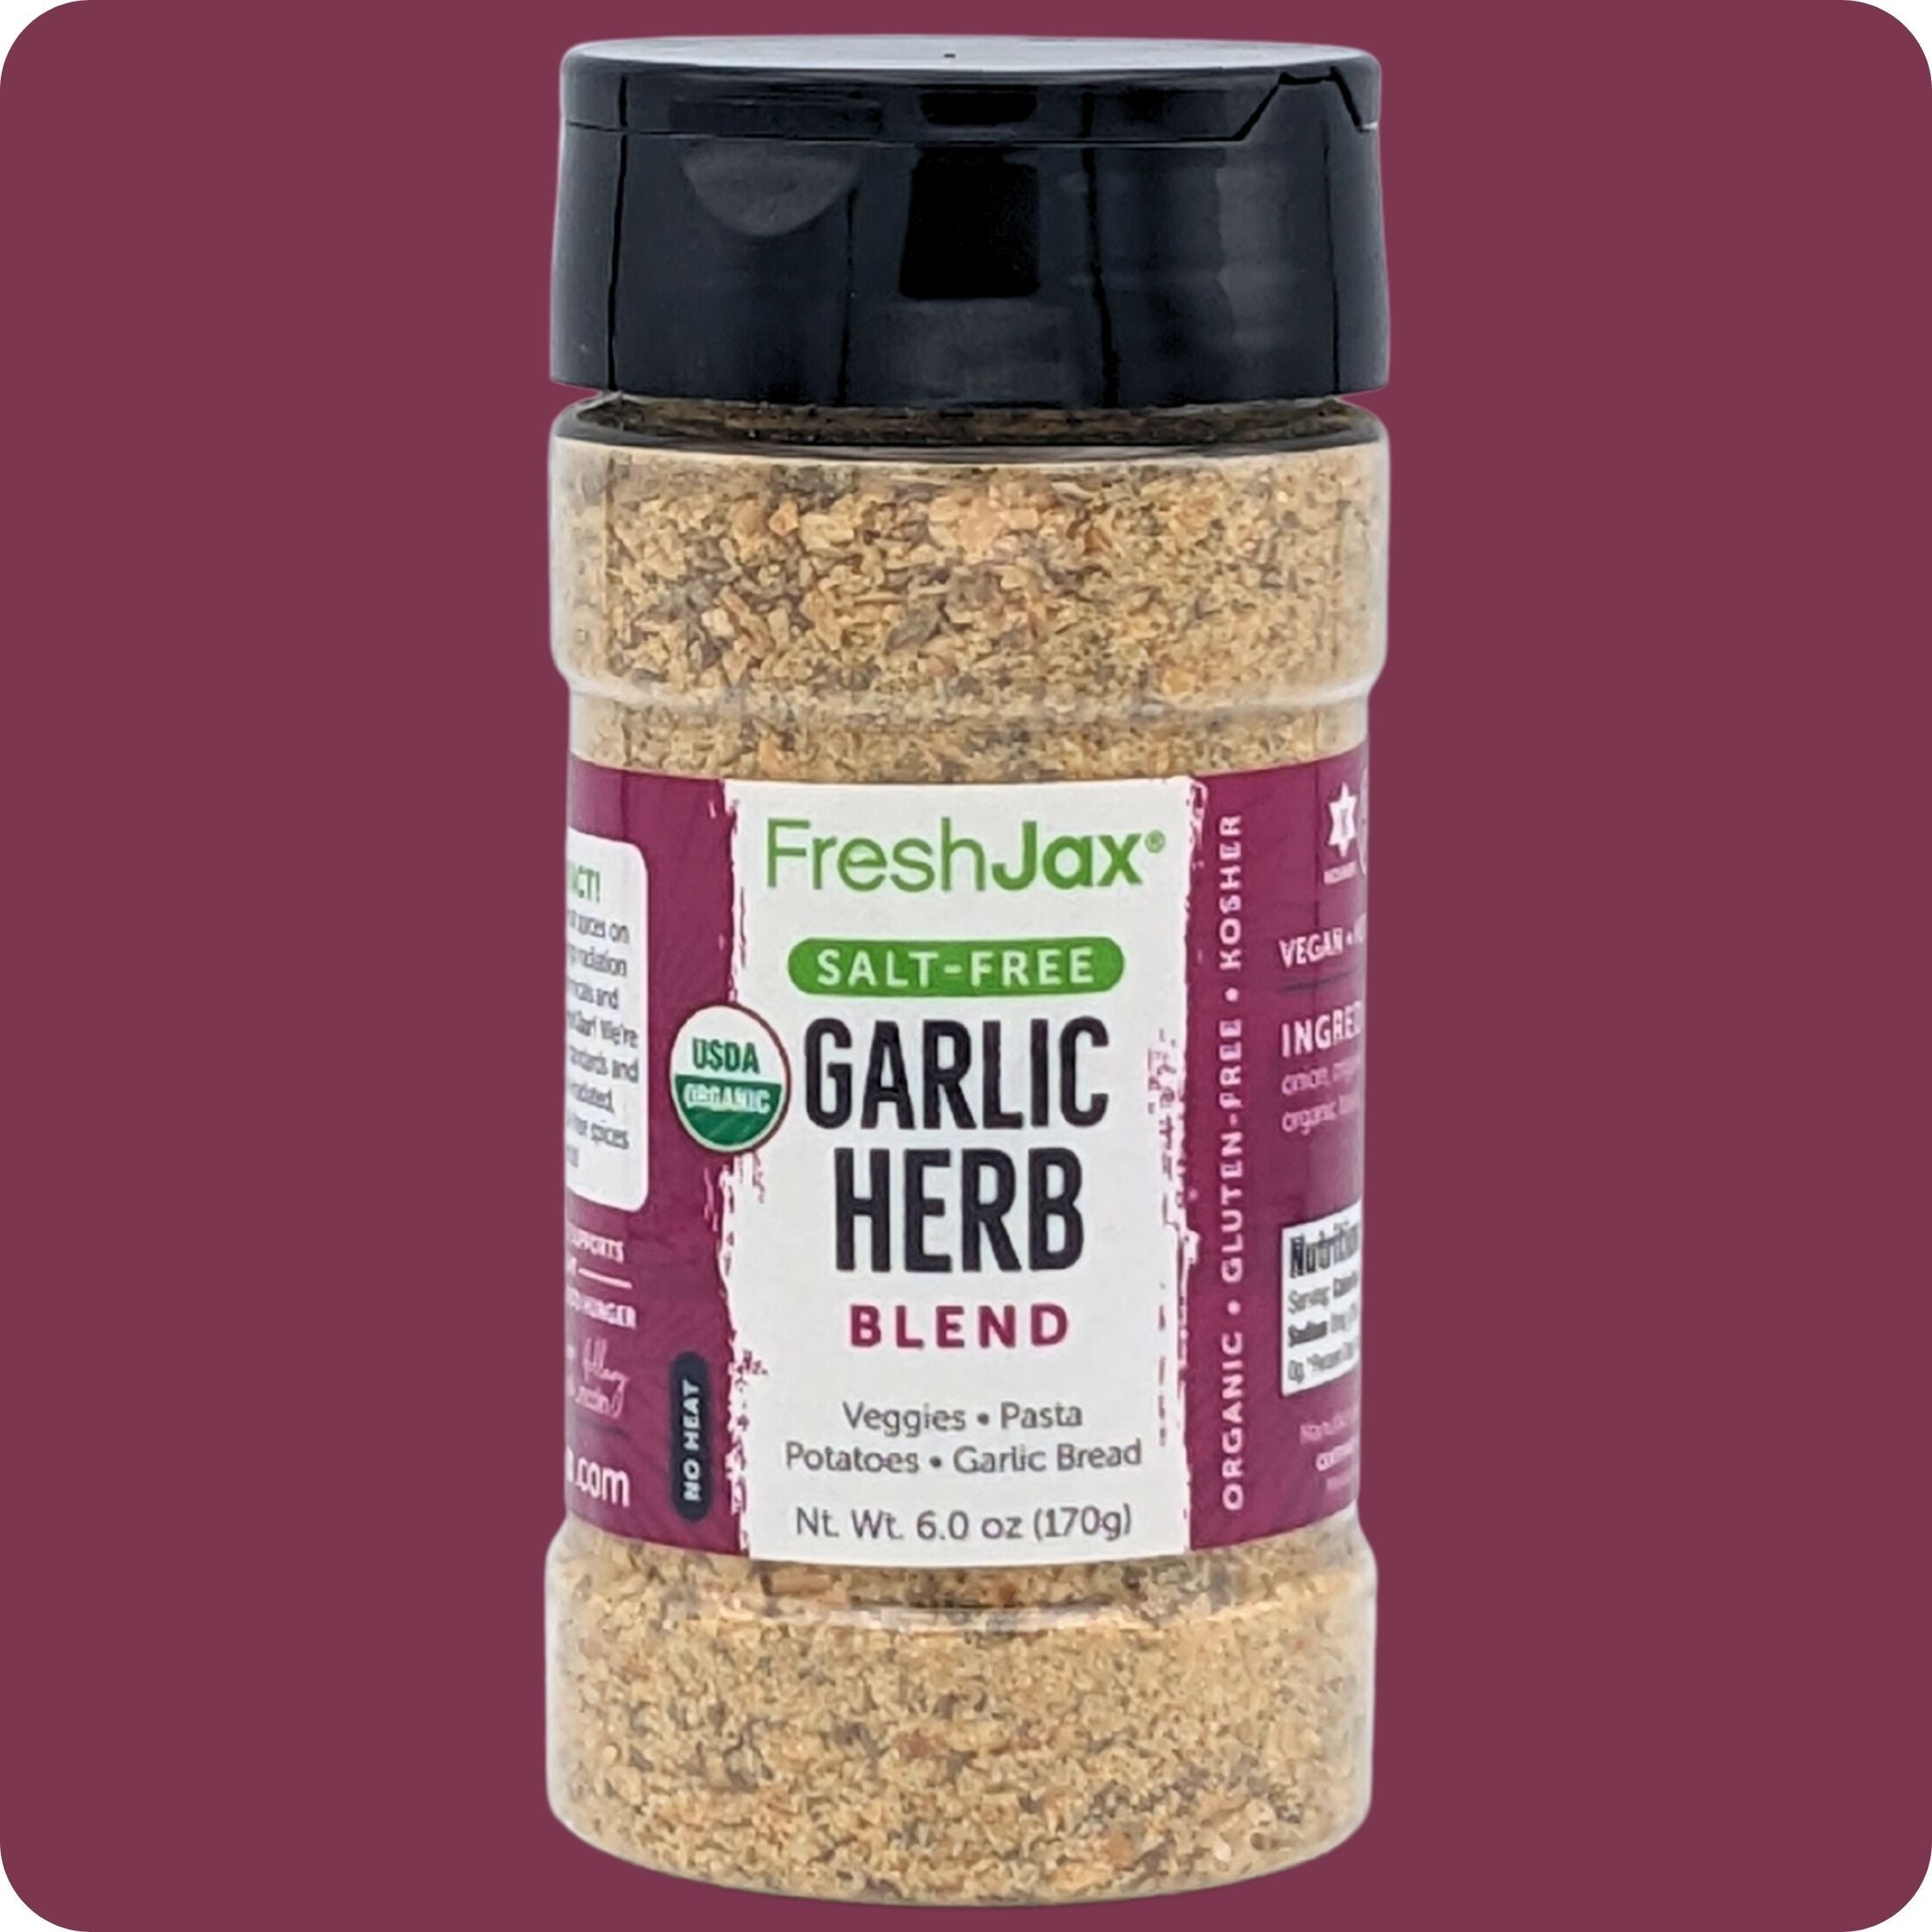 Garlic & Herb Seasoning